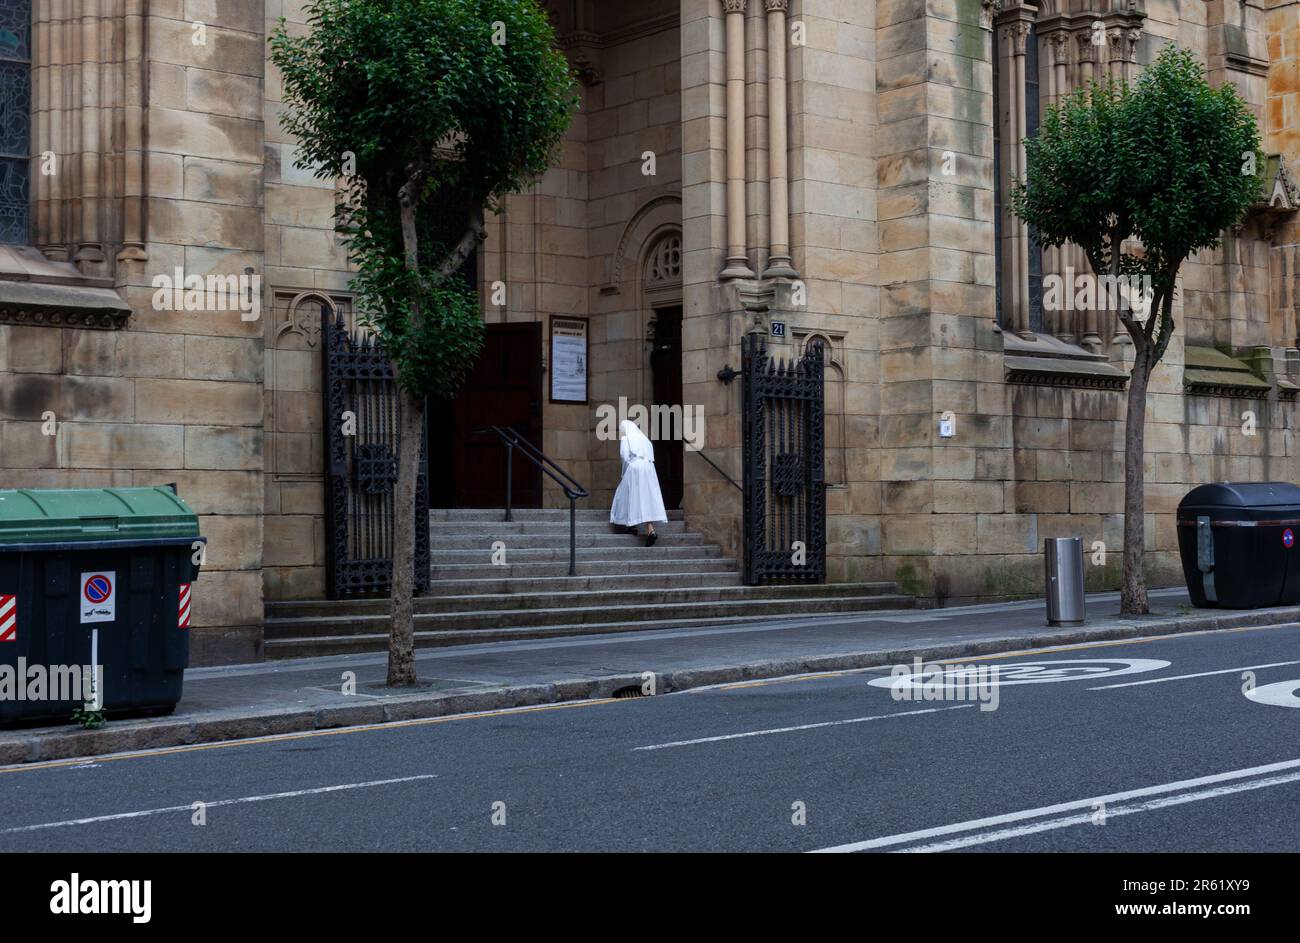 Bilbao, Espagne - 03 août 2022: Une nonne portant une habitude blanche escalade les escaliers de l'église de San Francisco de Asís également connue sous le nom de la Quinta par Banque D'Images